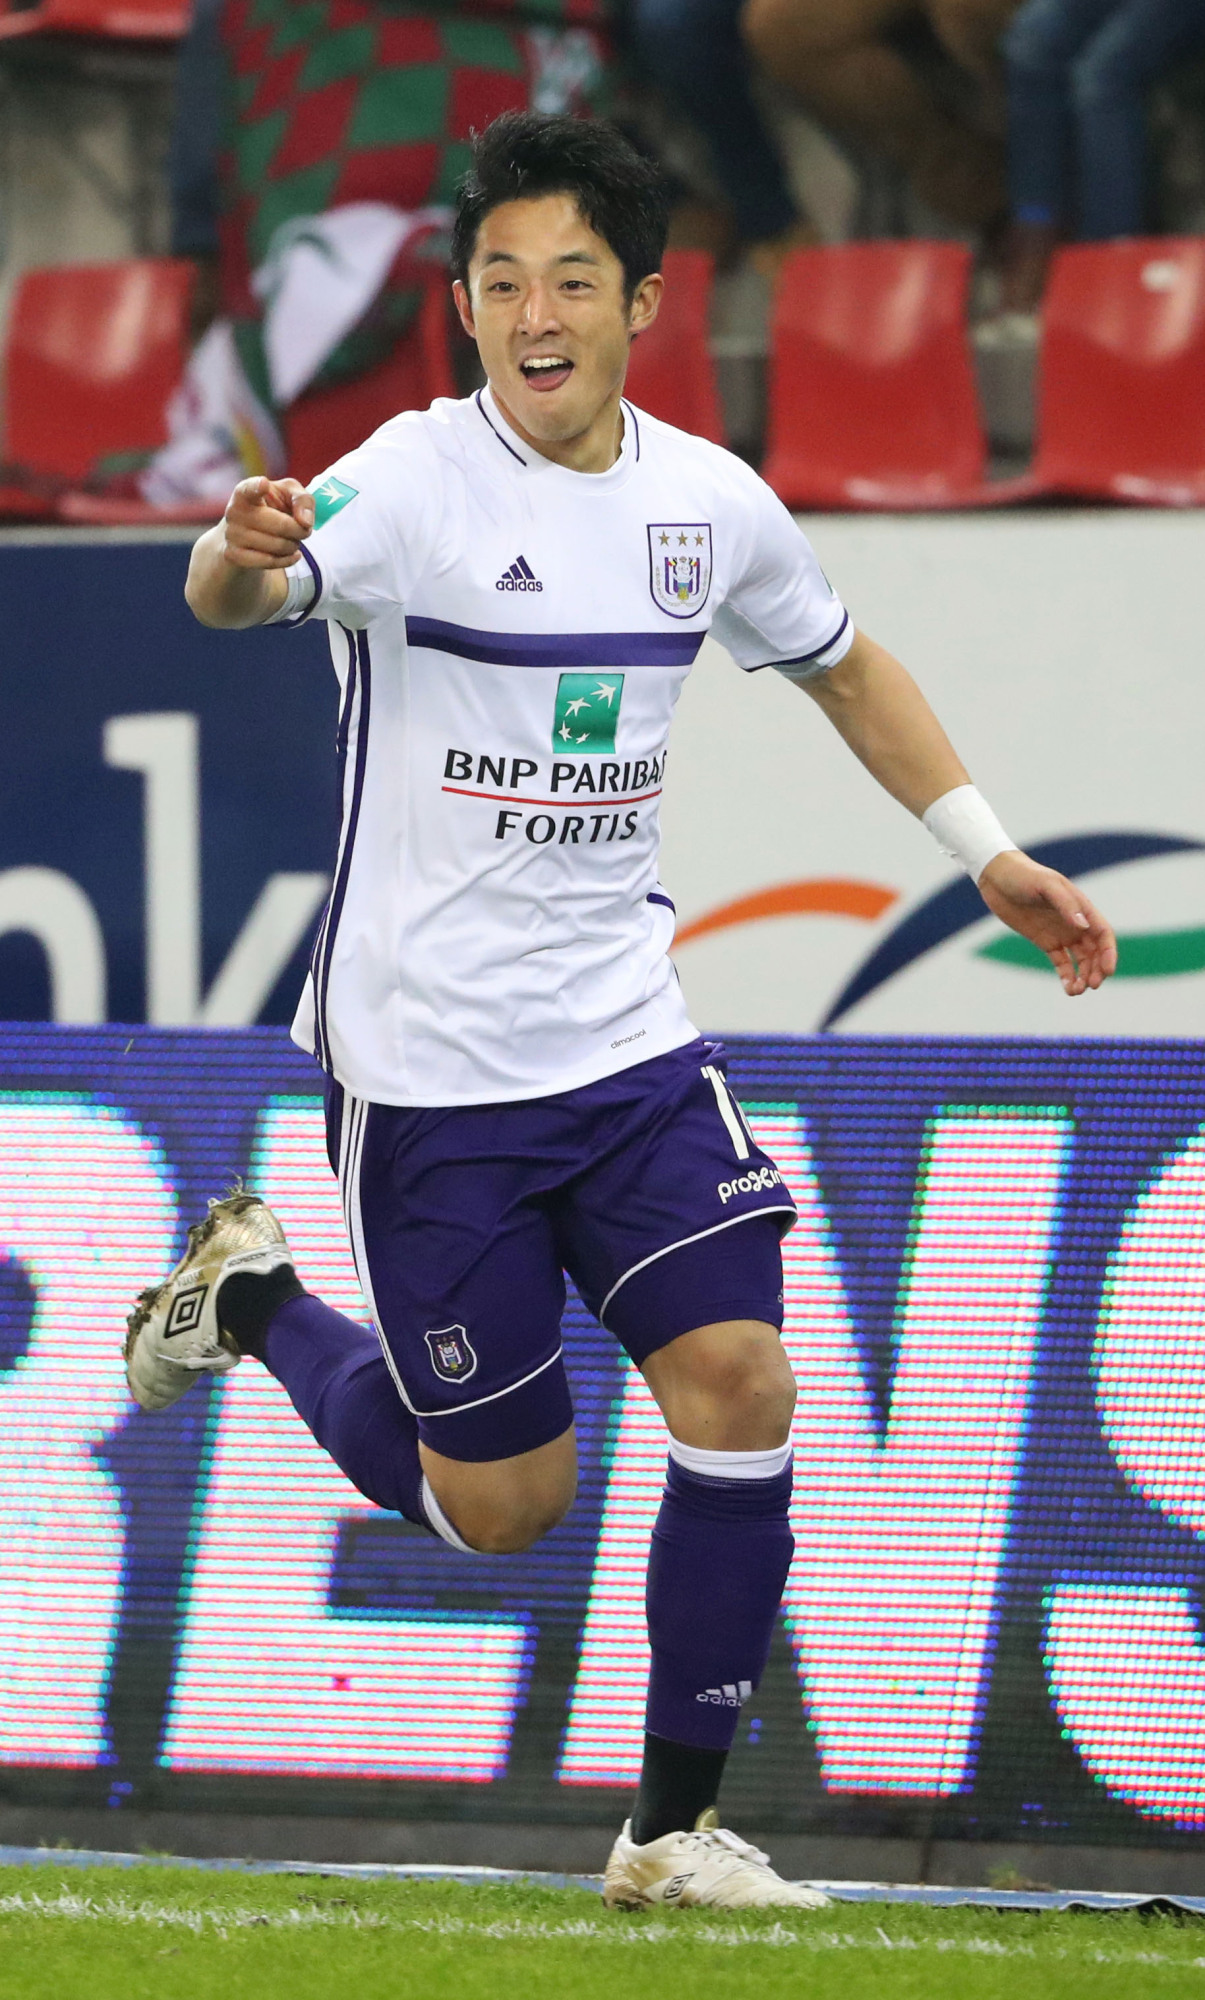 Anderlecht's Ryota Morioka celebrates after scoring the 2-0 goal